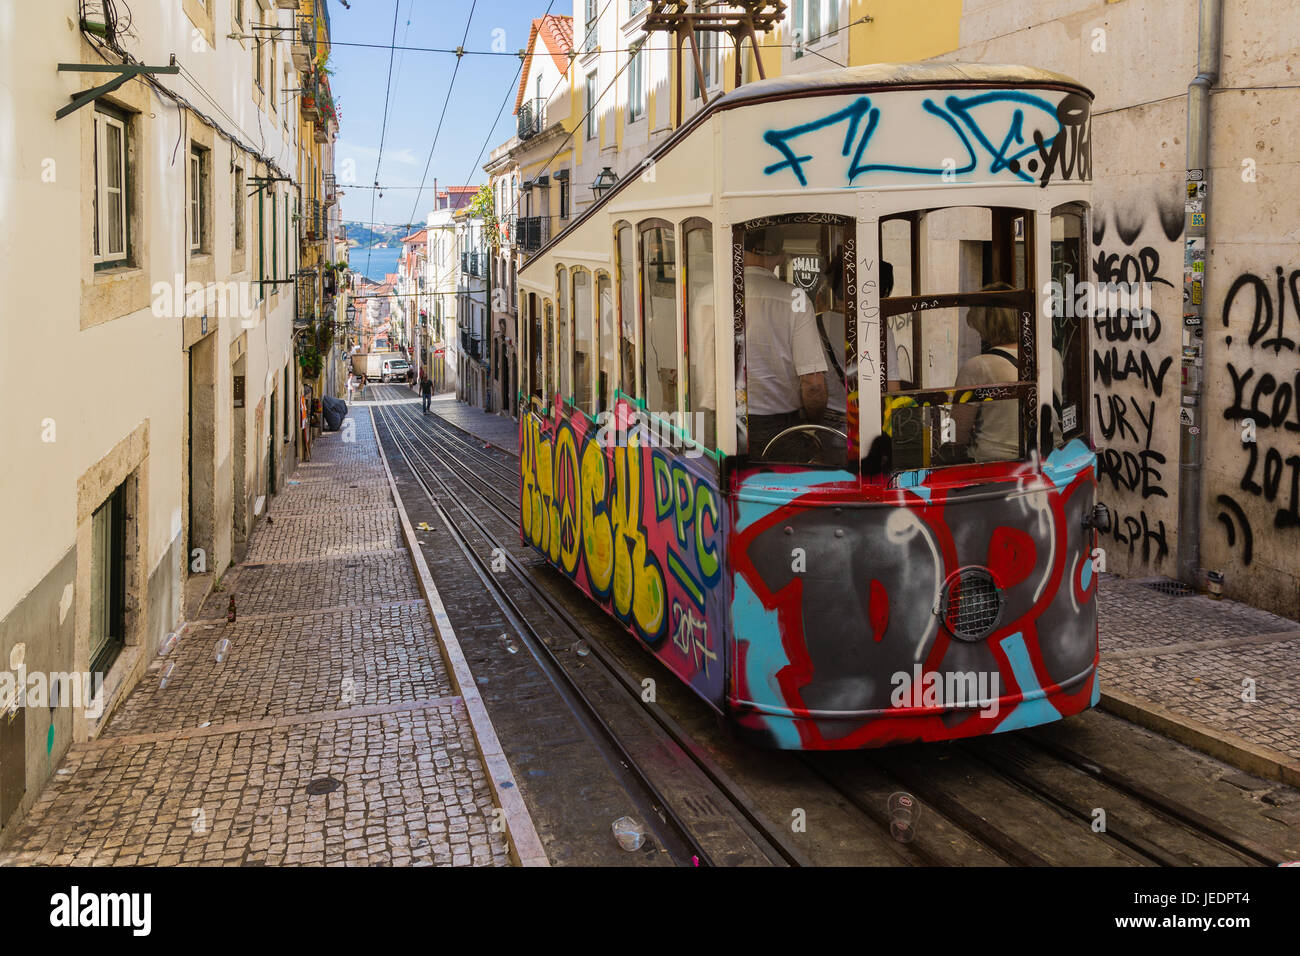 Tramway ancien typique de Lisbonne, au Portugal. c'est une grande attraction touristique. Banque D'Images